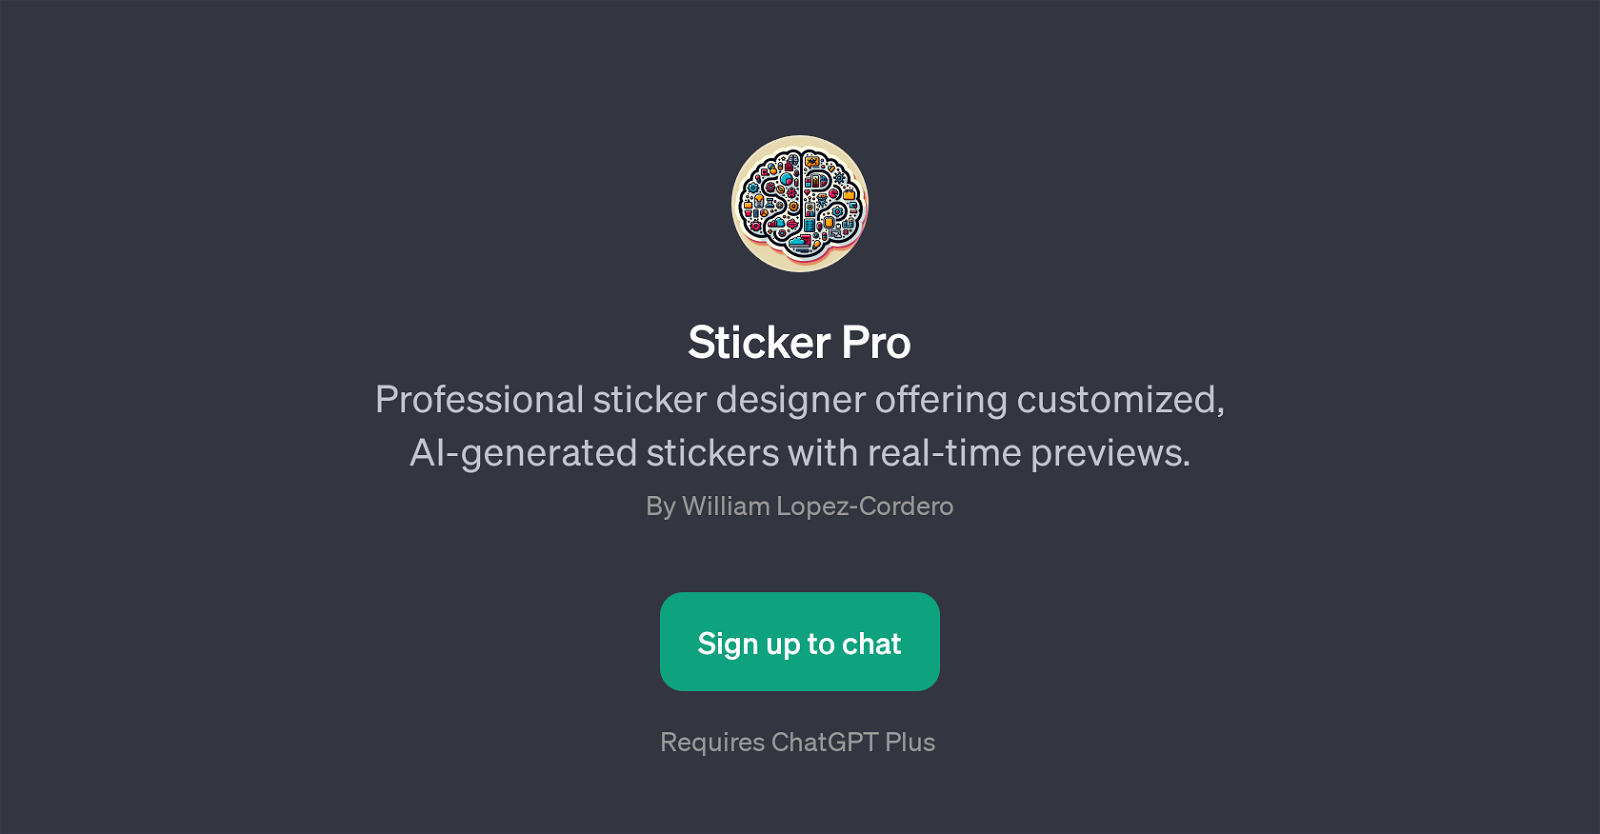 Sticker Pro website